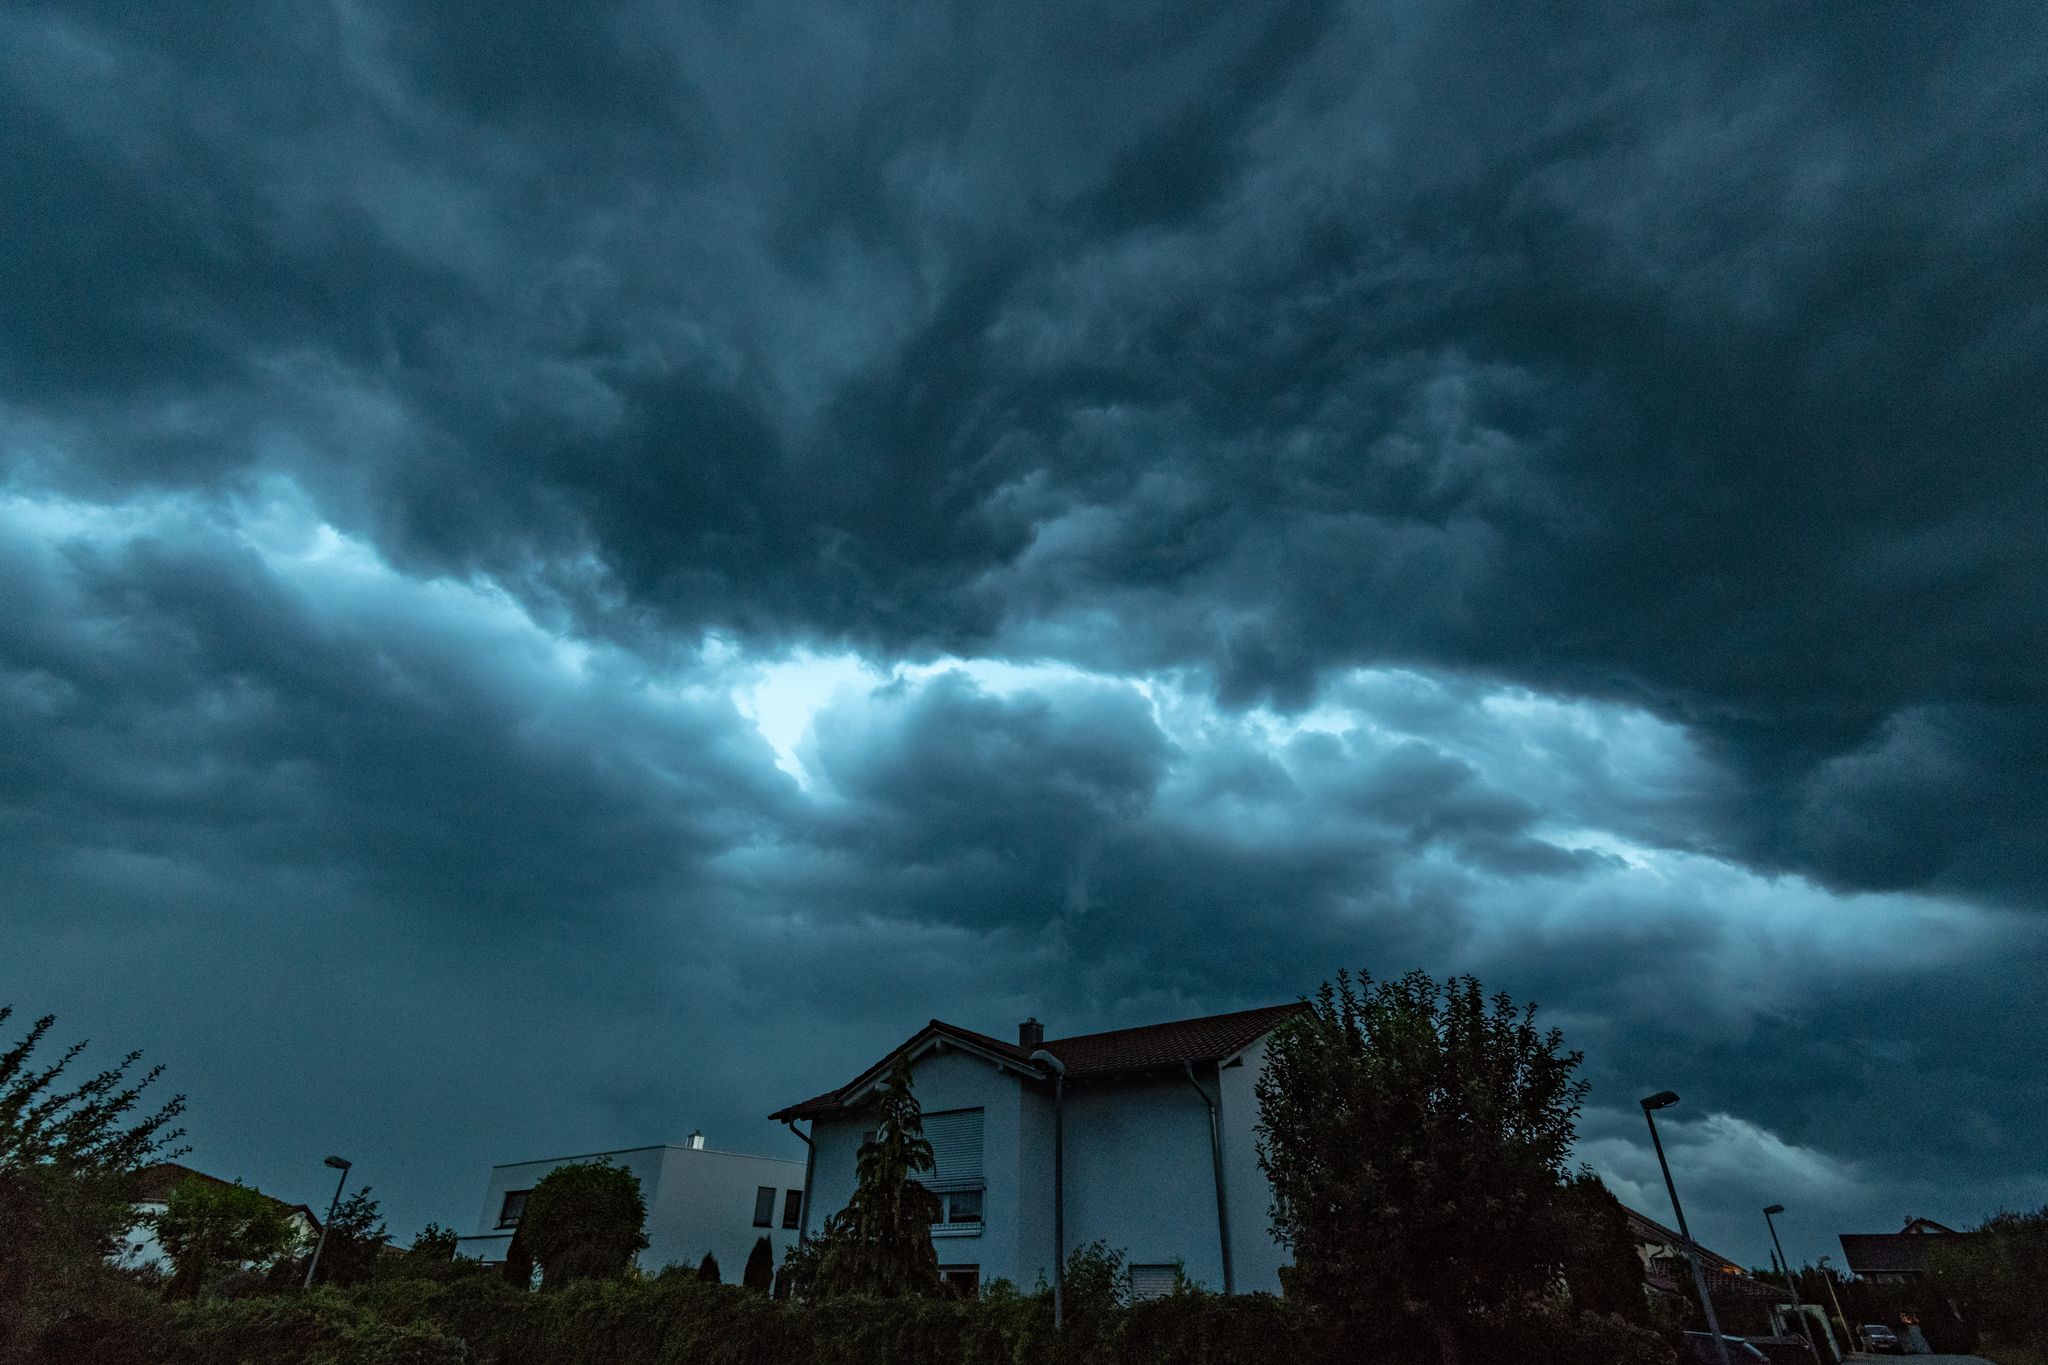 ARCHIVO - Ante la advertencia meteorológica de una tormenta que se avecina es conveniente tomar una serie de medidas preventivas en el hogar. Foto: Armin Weigel/dpa